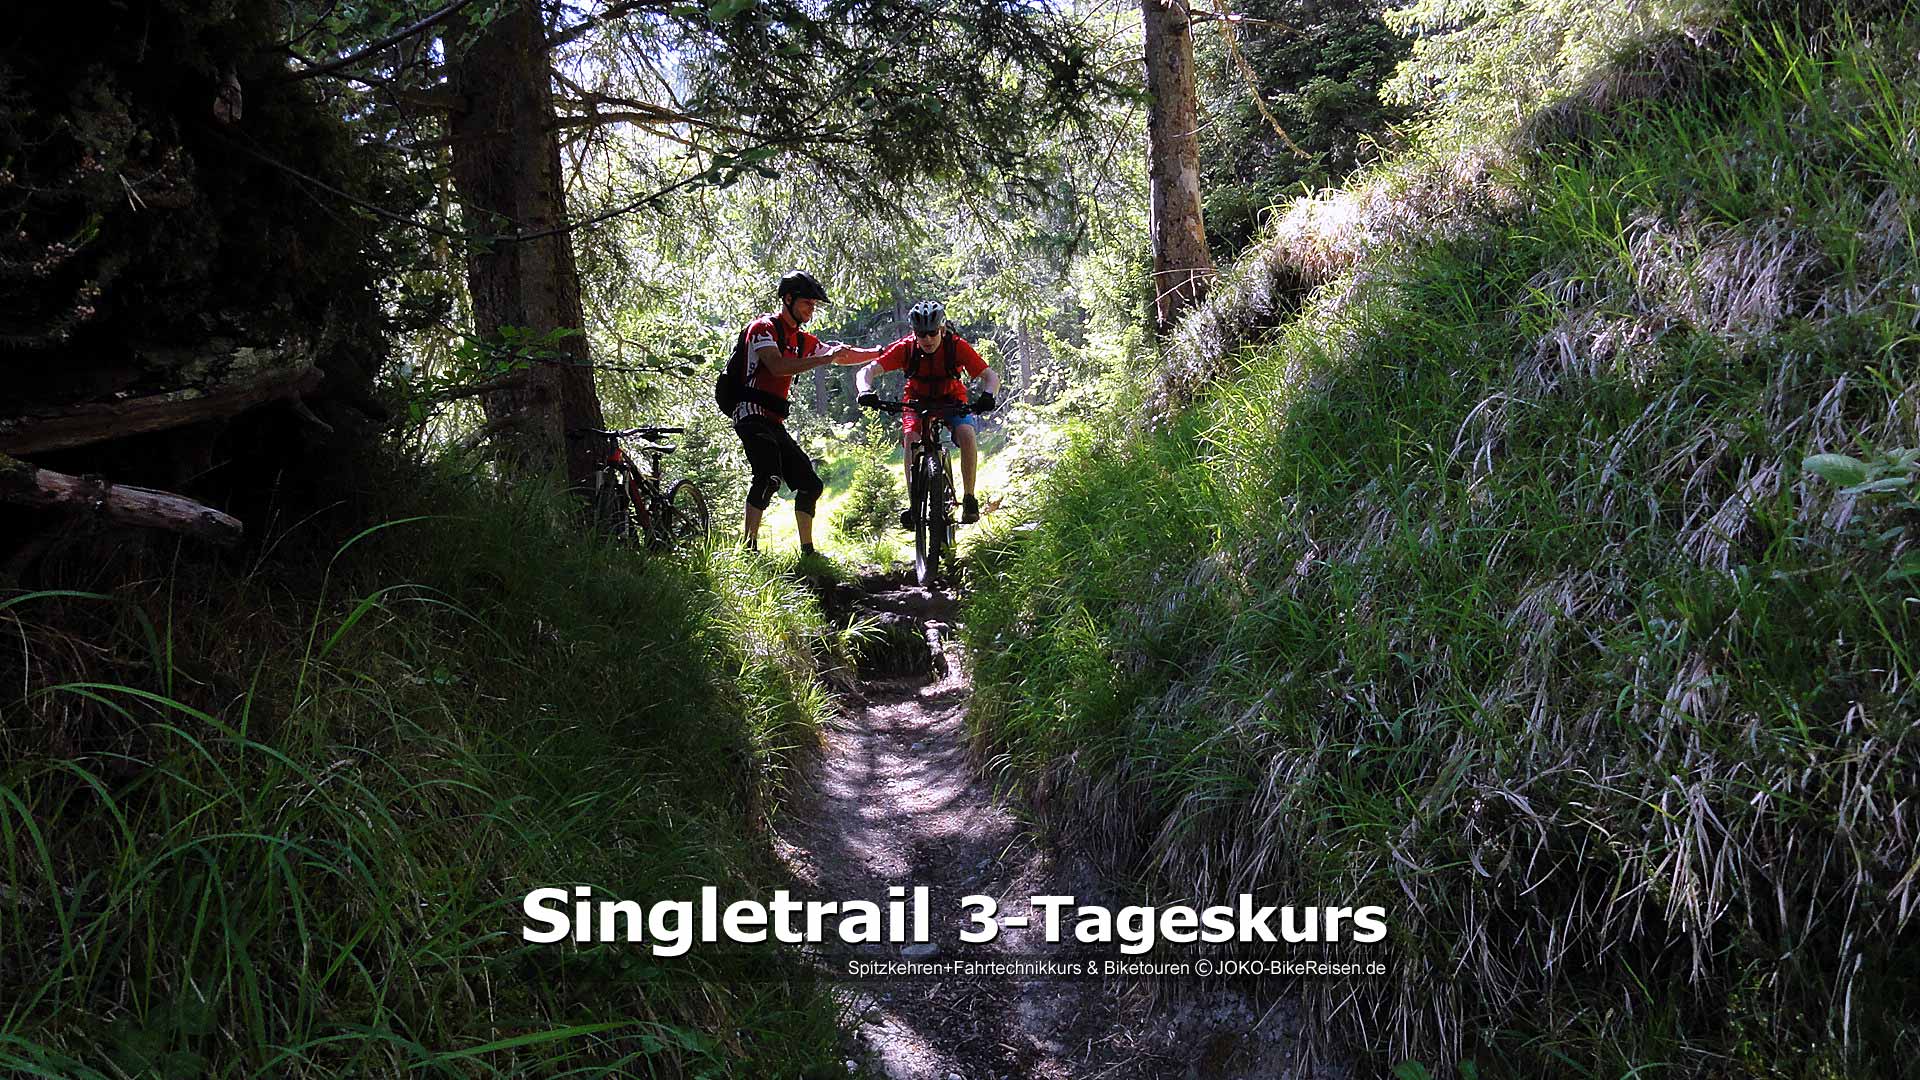 MTB-Singletrail 3-Tageskurs: Direkt nach enger Kurve folgt Wurzelabsatz im engen Trail. Halb so wild, mit den richtigen Tipps :)